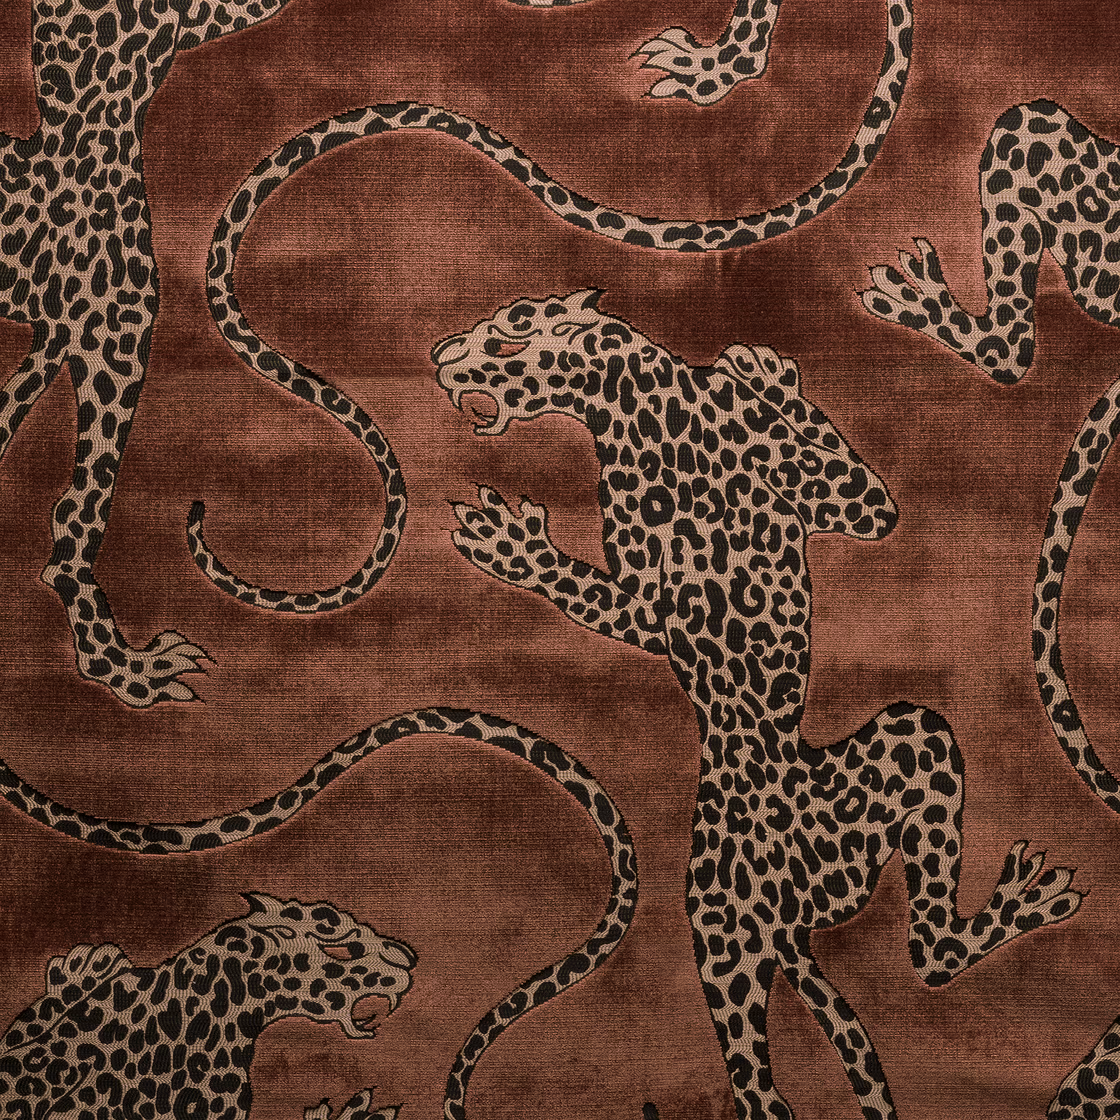 Panthera fabric in whiskey